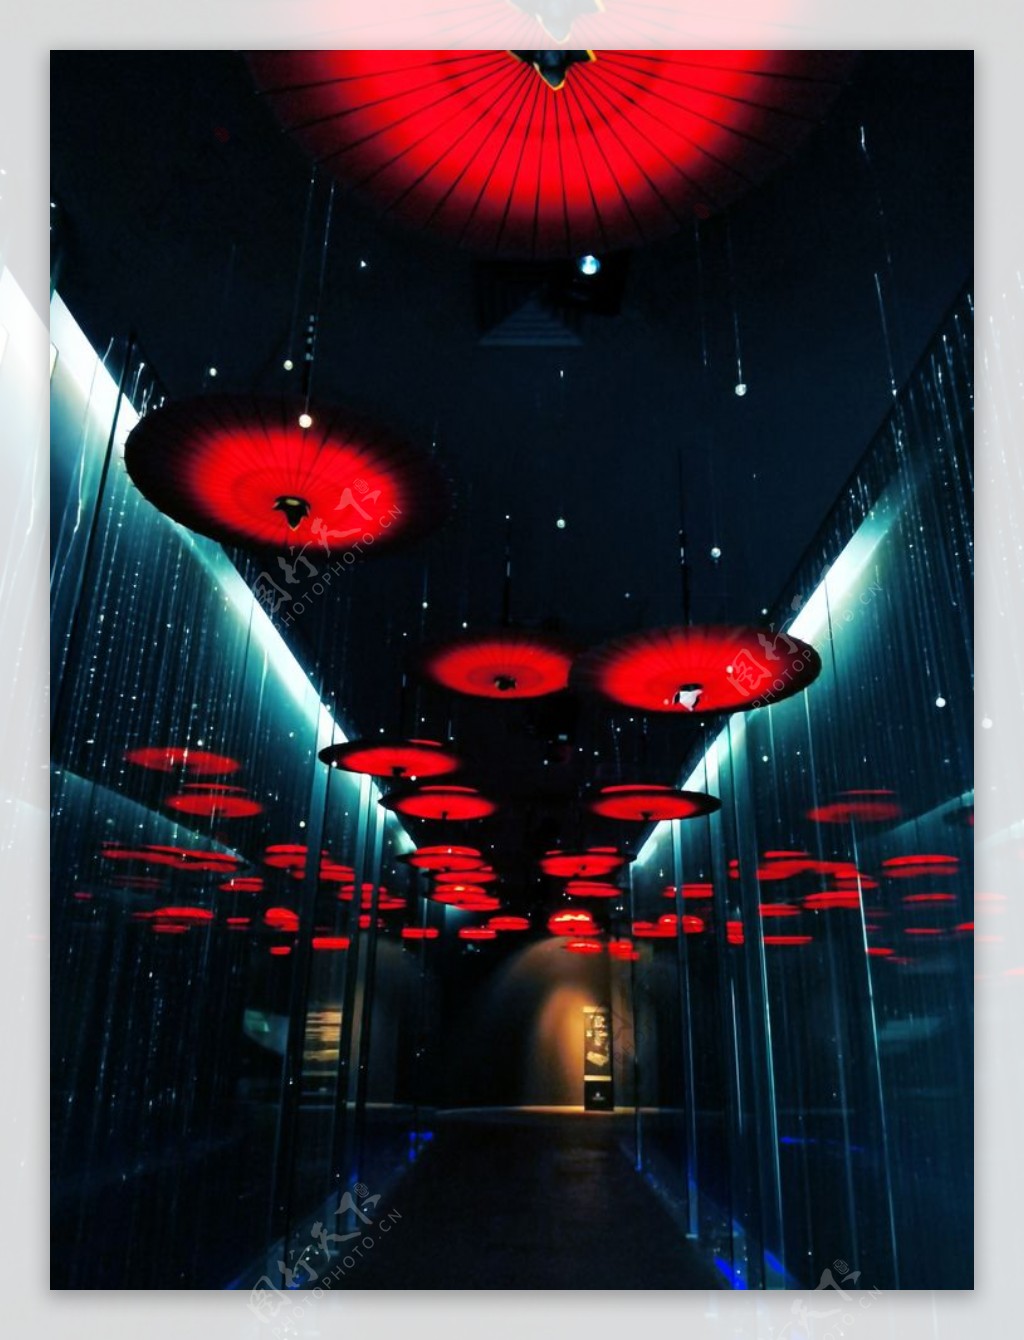 杭州中国伞博物馆图片